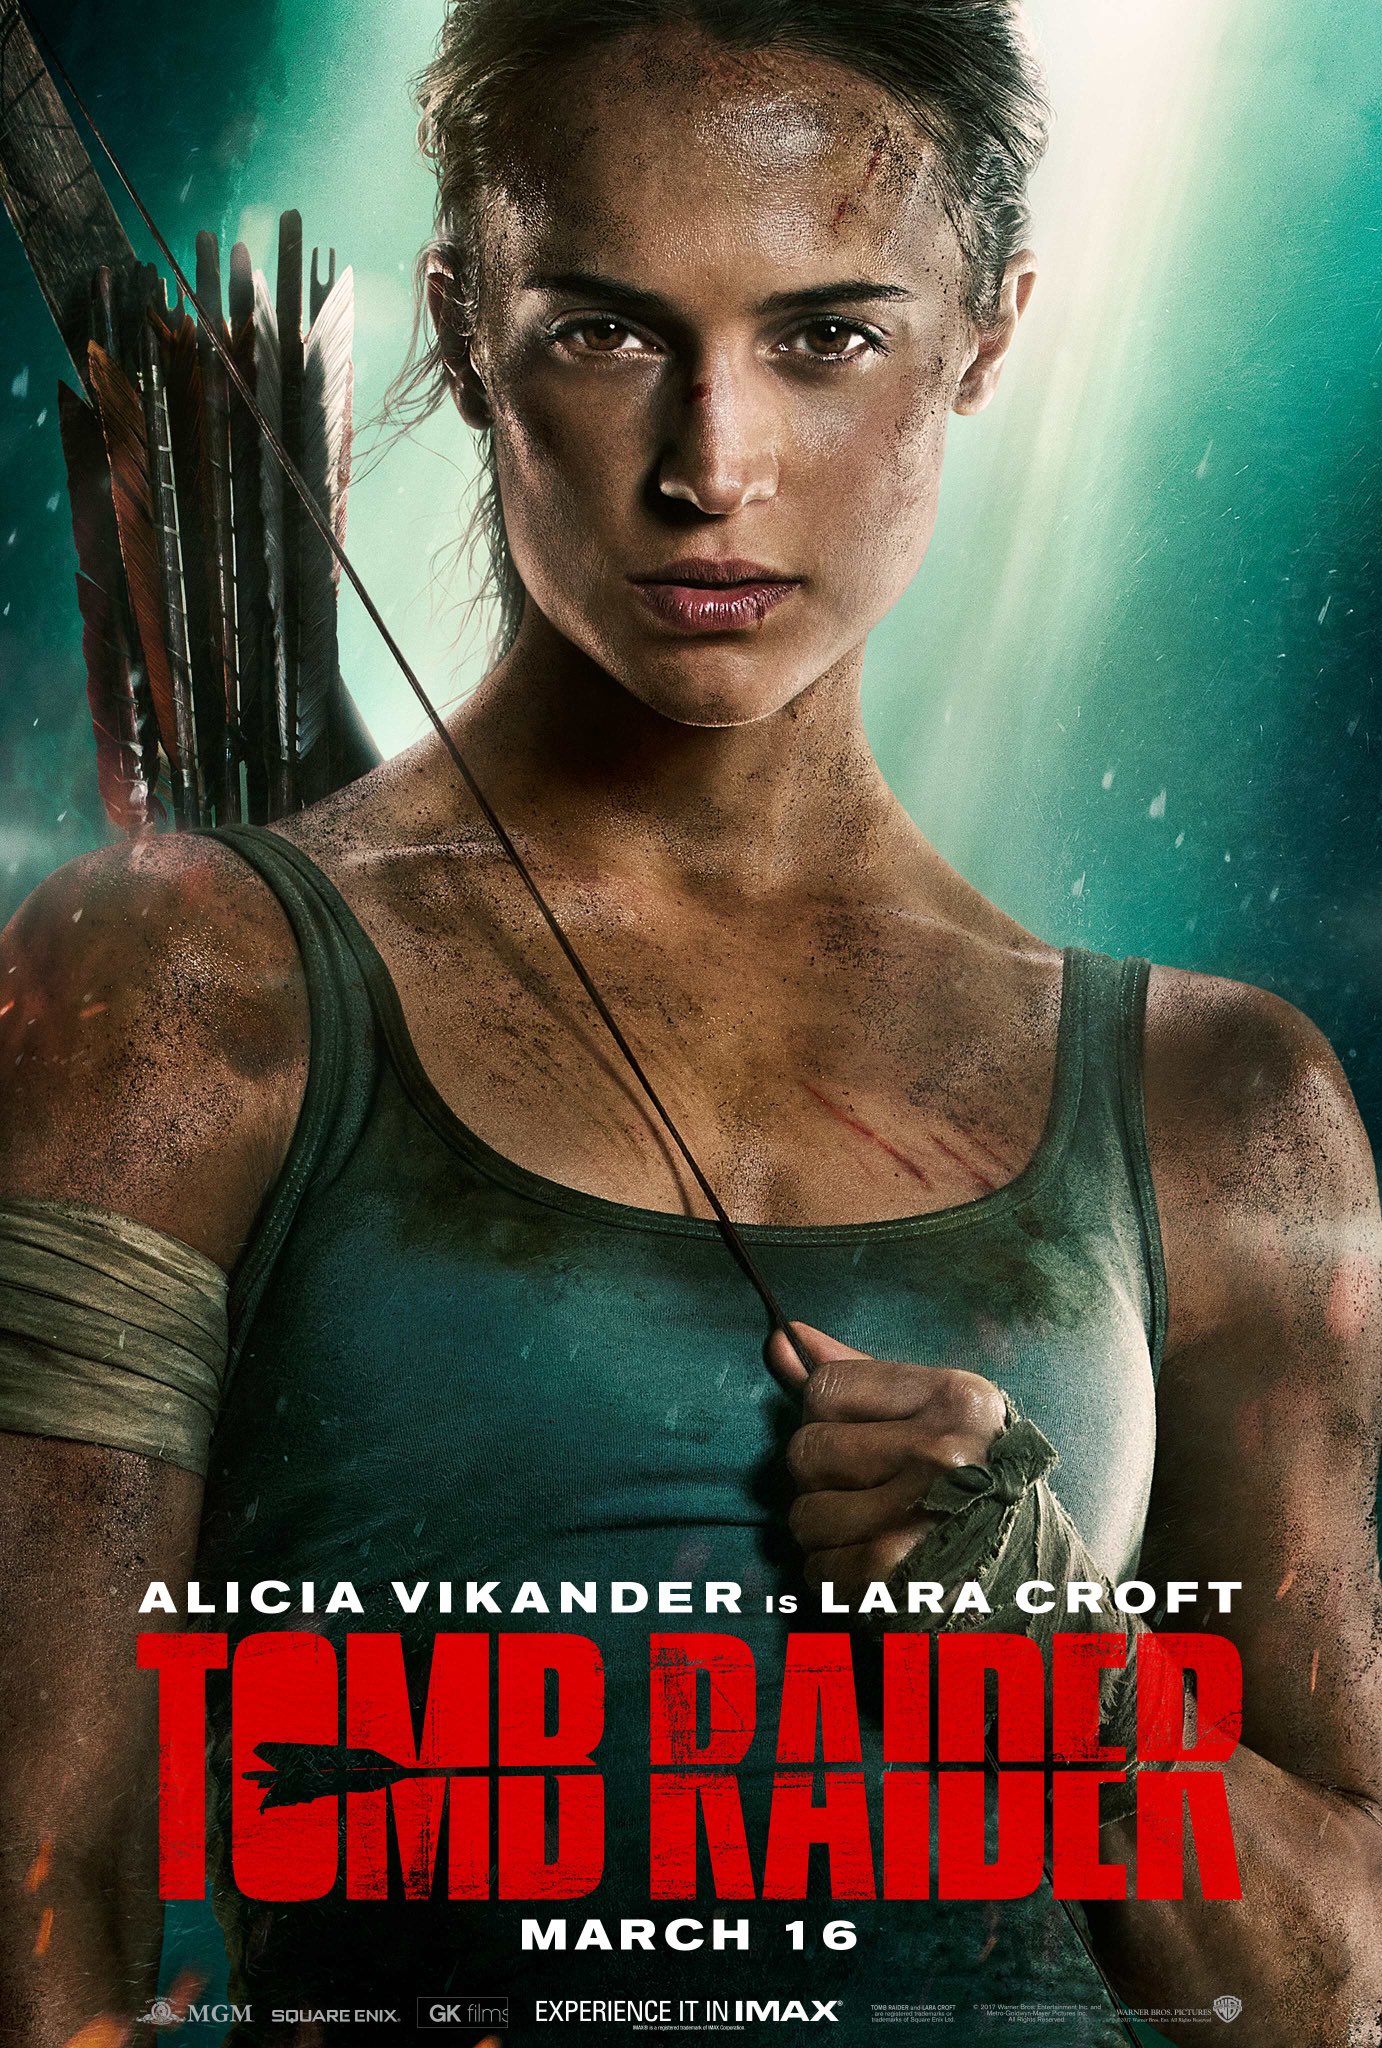 Alicia Vikander Gives A Stare Down In New Tomb Raider